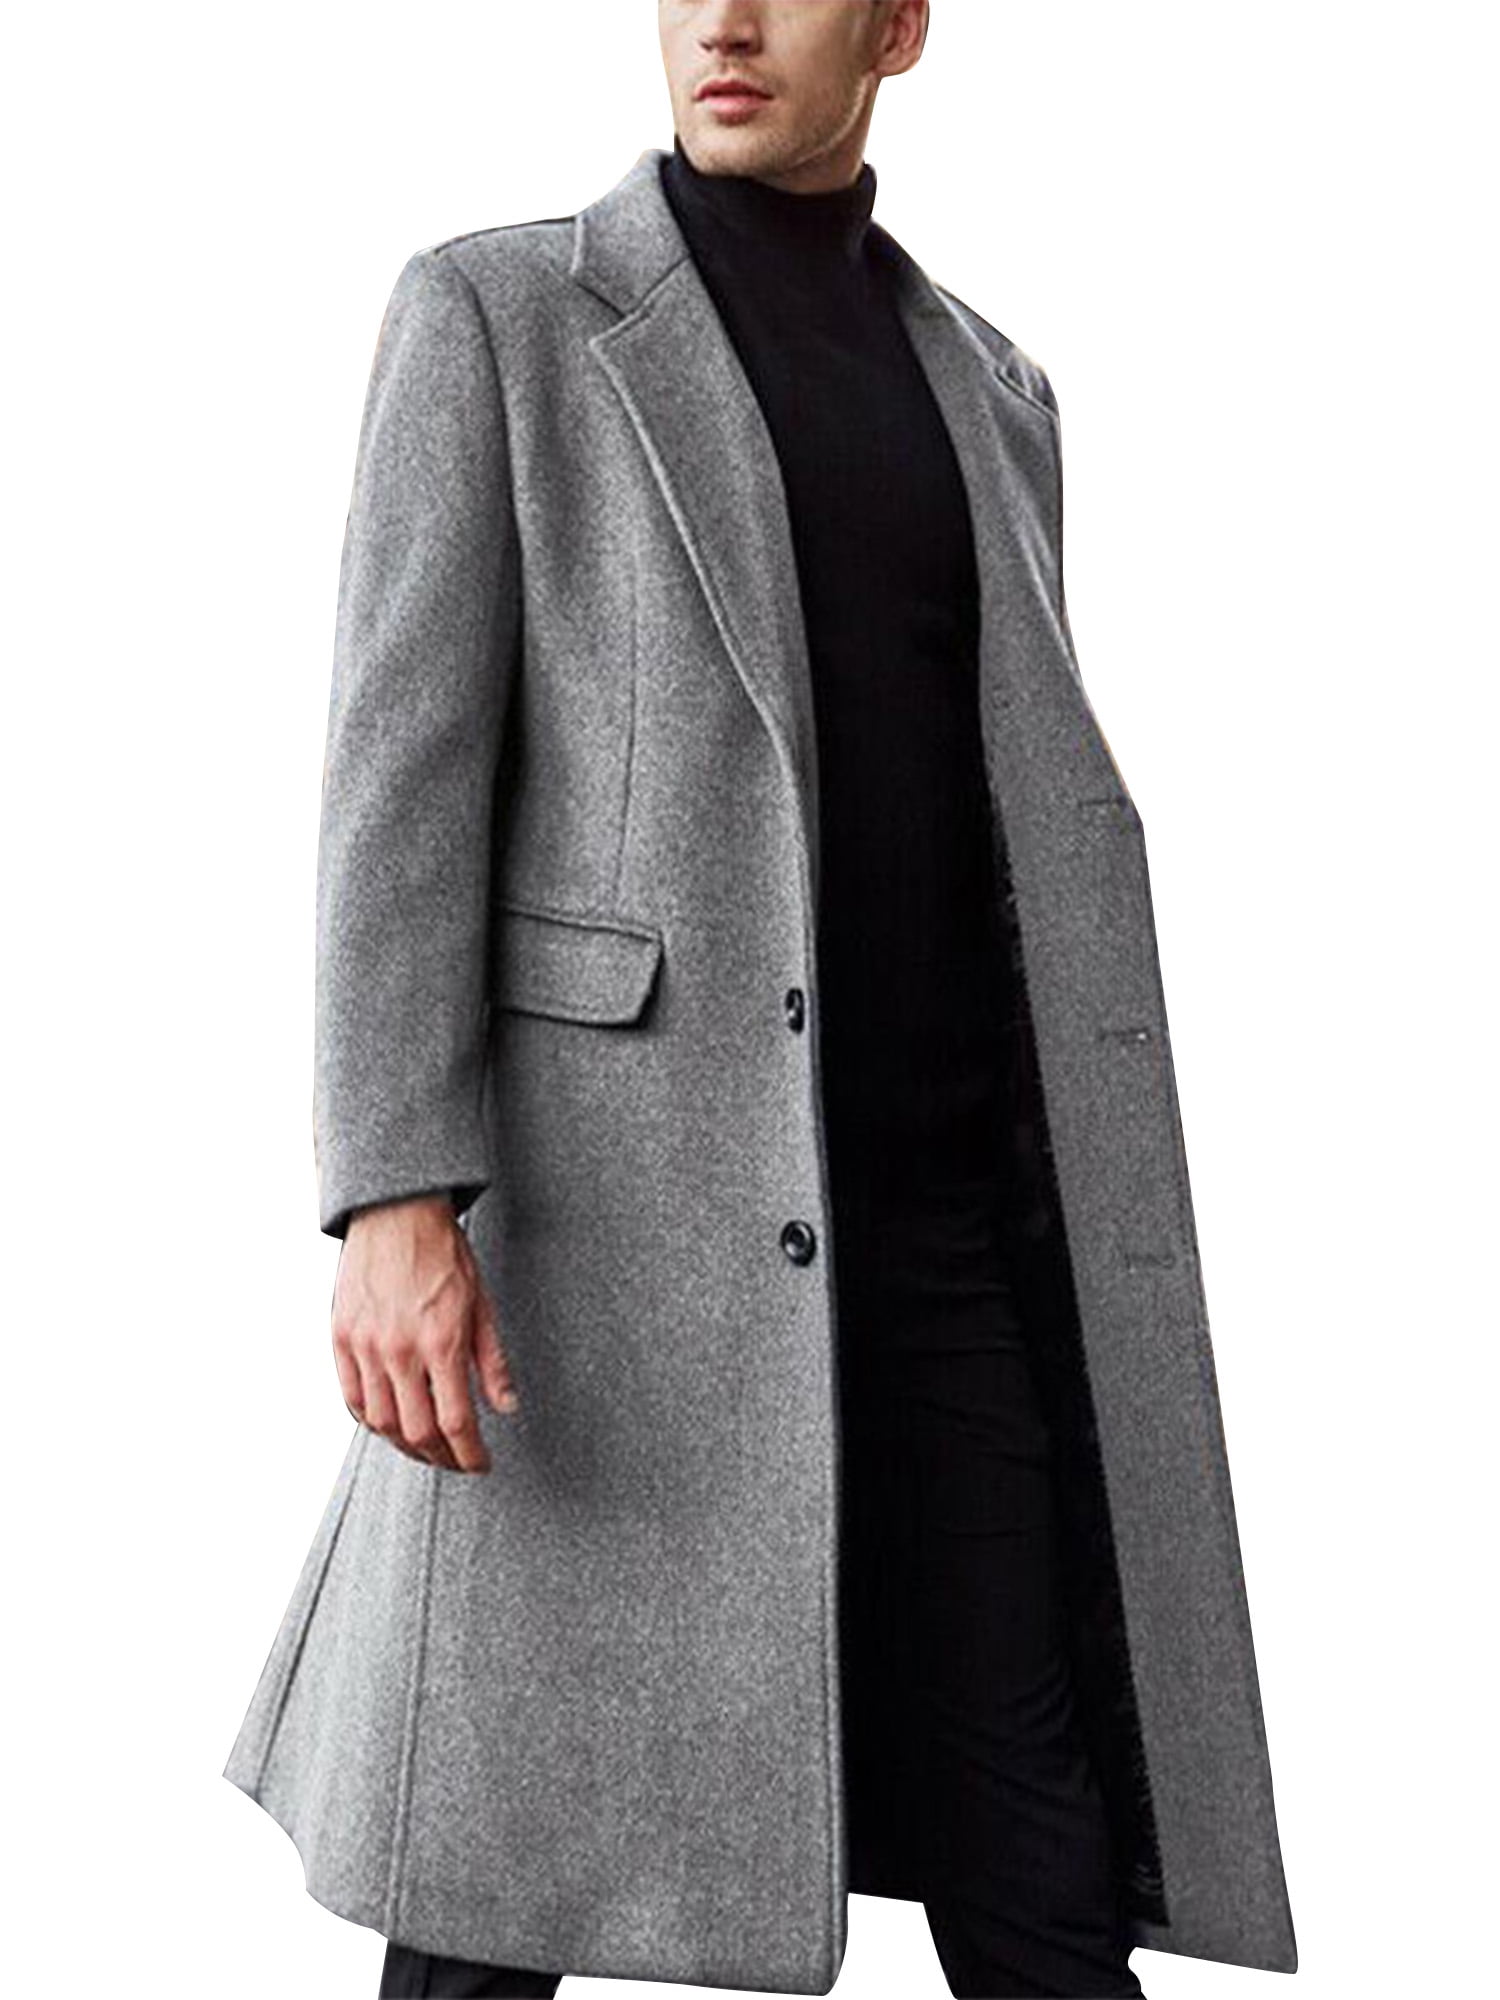 GESELLIE Mens Casual Trench Pea Coat Double Breasted Epaulet Slim Wool Overcoat Jacket 